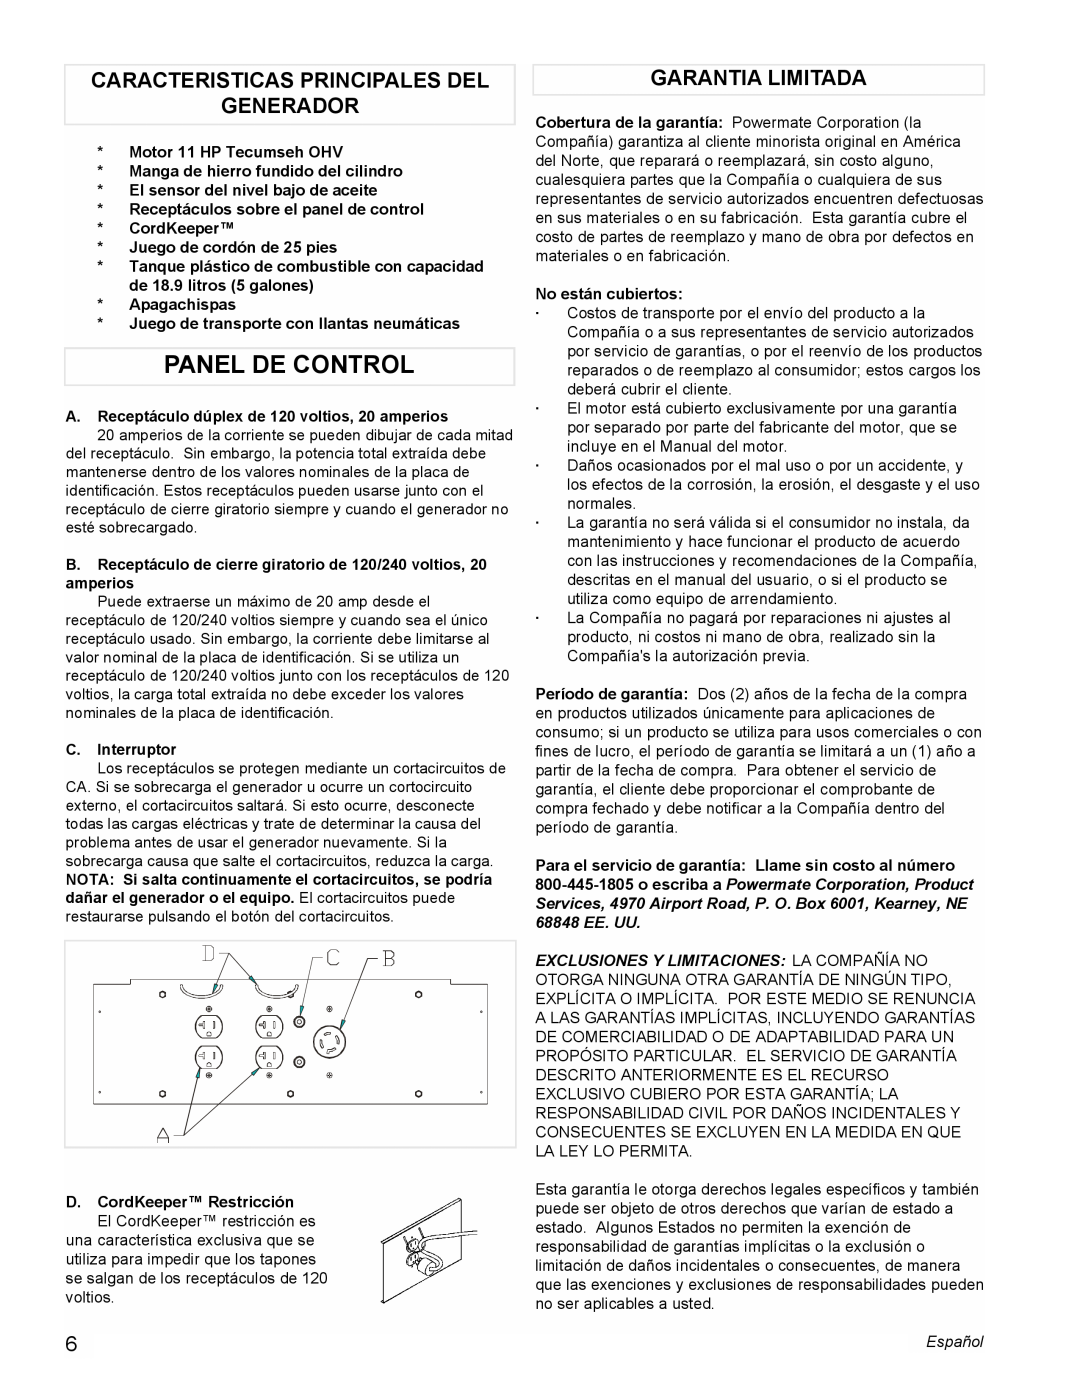 Powermate PL0525501 manual Panel De Control, Caracteristicas Principales Del Generador, Garantia Limitada 